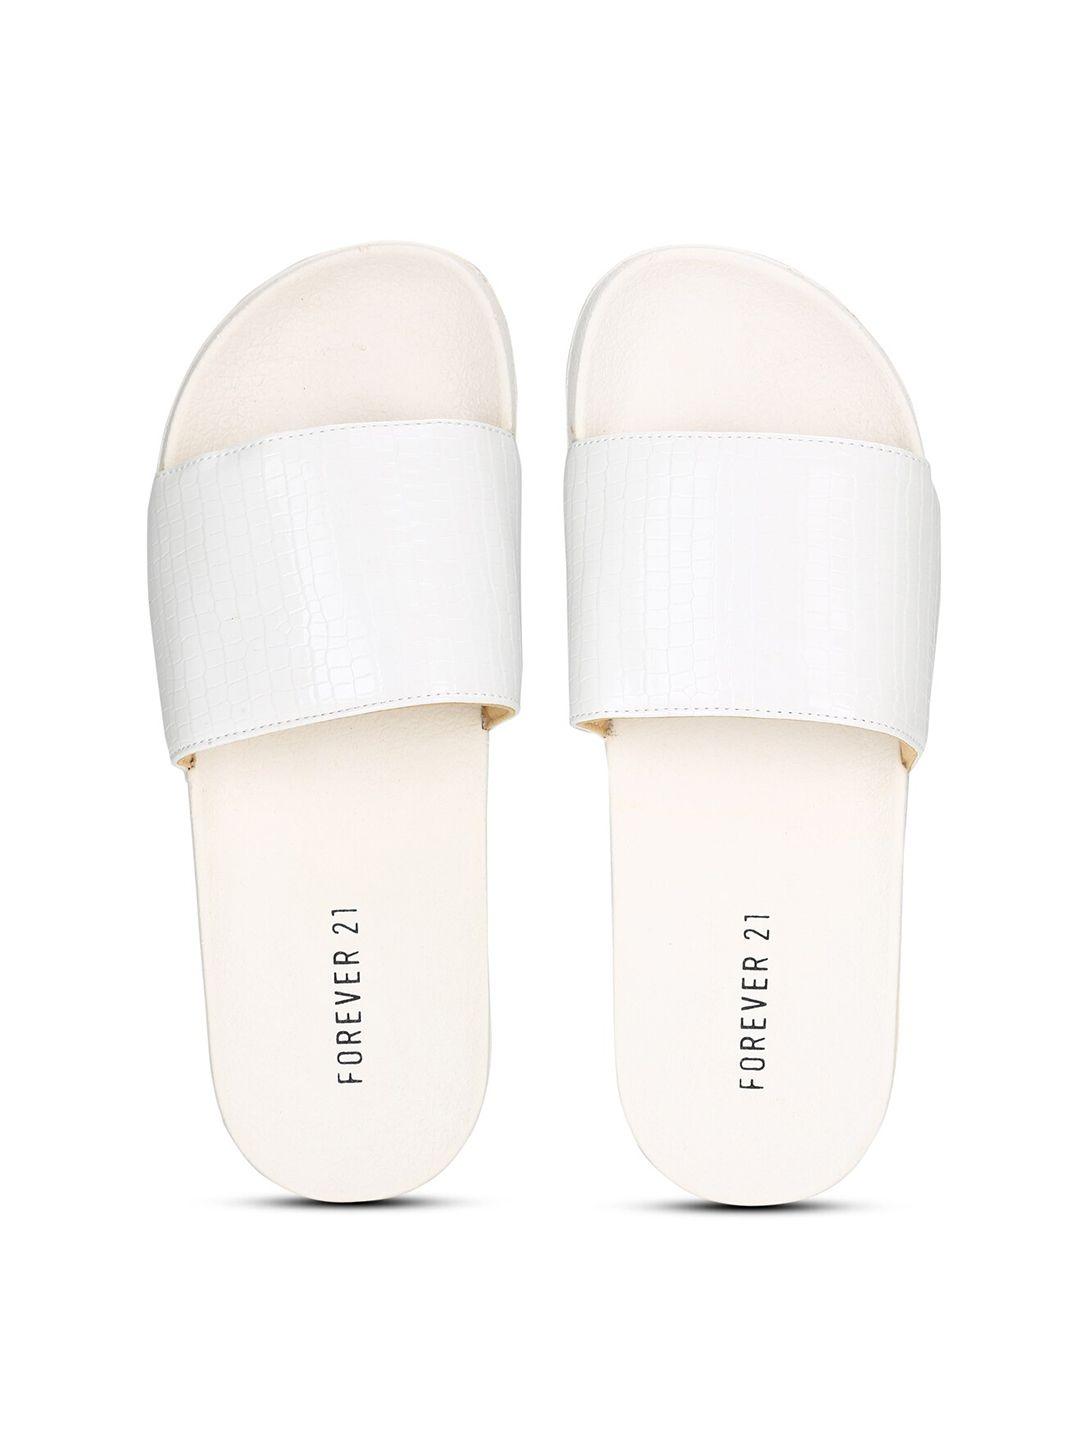 forever 21 women white room slippers